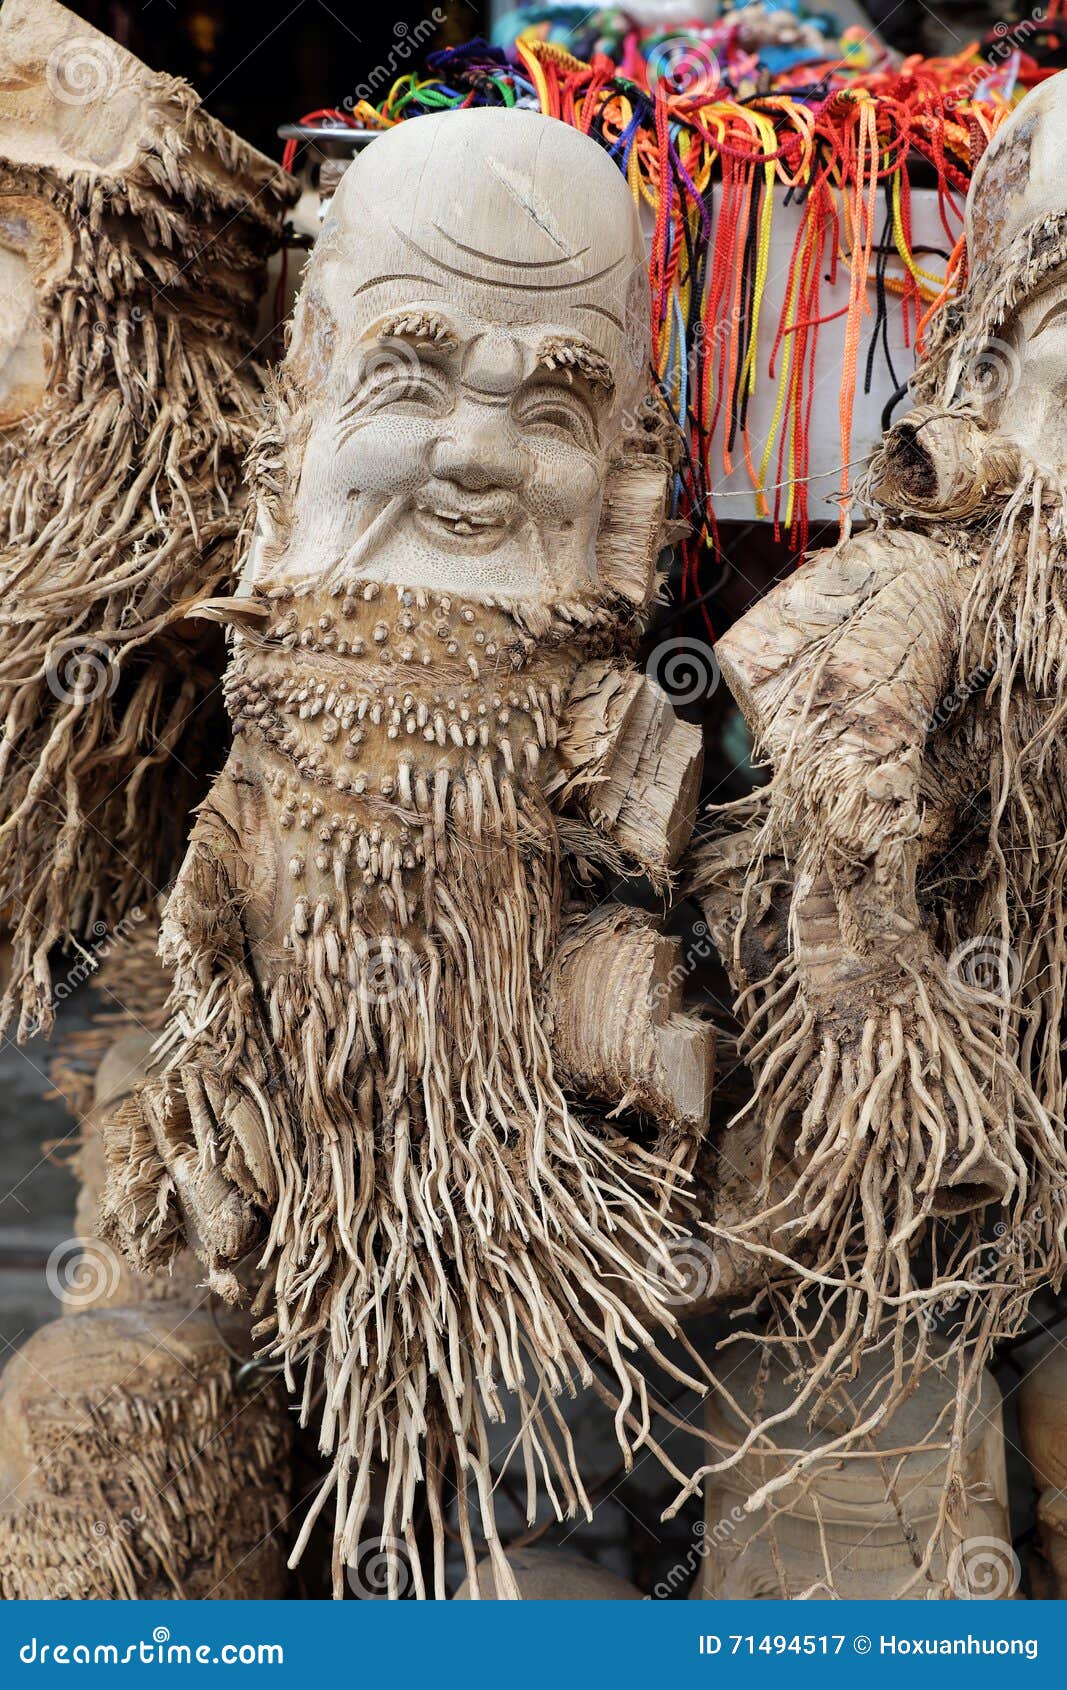 Kunstprodukt von der Bambuswurzel. HOI, VIETNAM 7. FEBRUAR 2016: Erstaunliches handgemachtes Produkt von der Bambuswurzel am Souvenirladen in Hoian, Vietnam, Kunstprodukt machen durch Form auf Bambuswurzeln, machen smileygesicht für Charakter